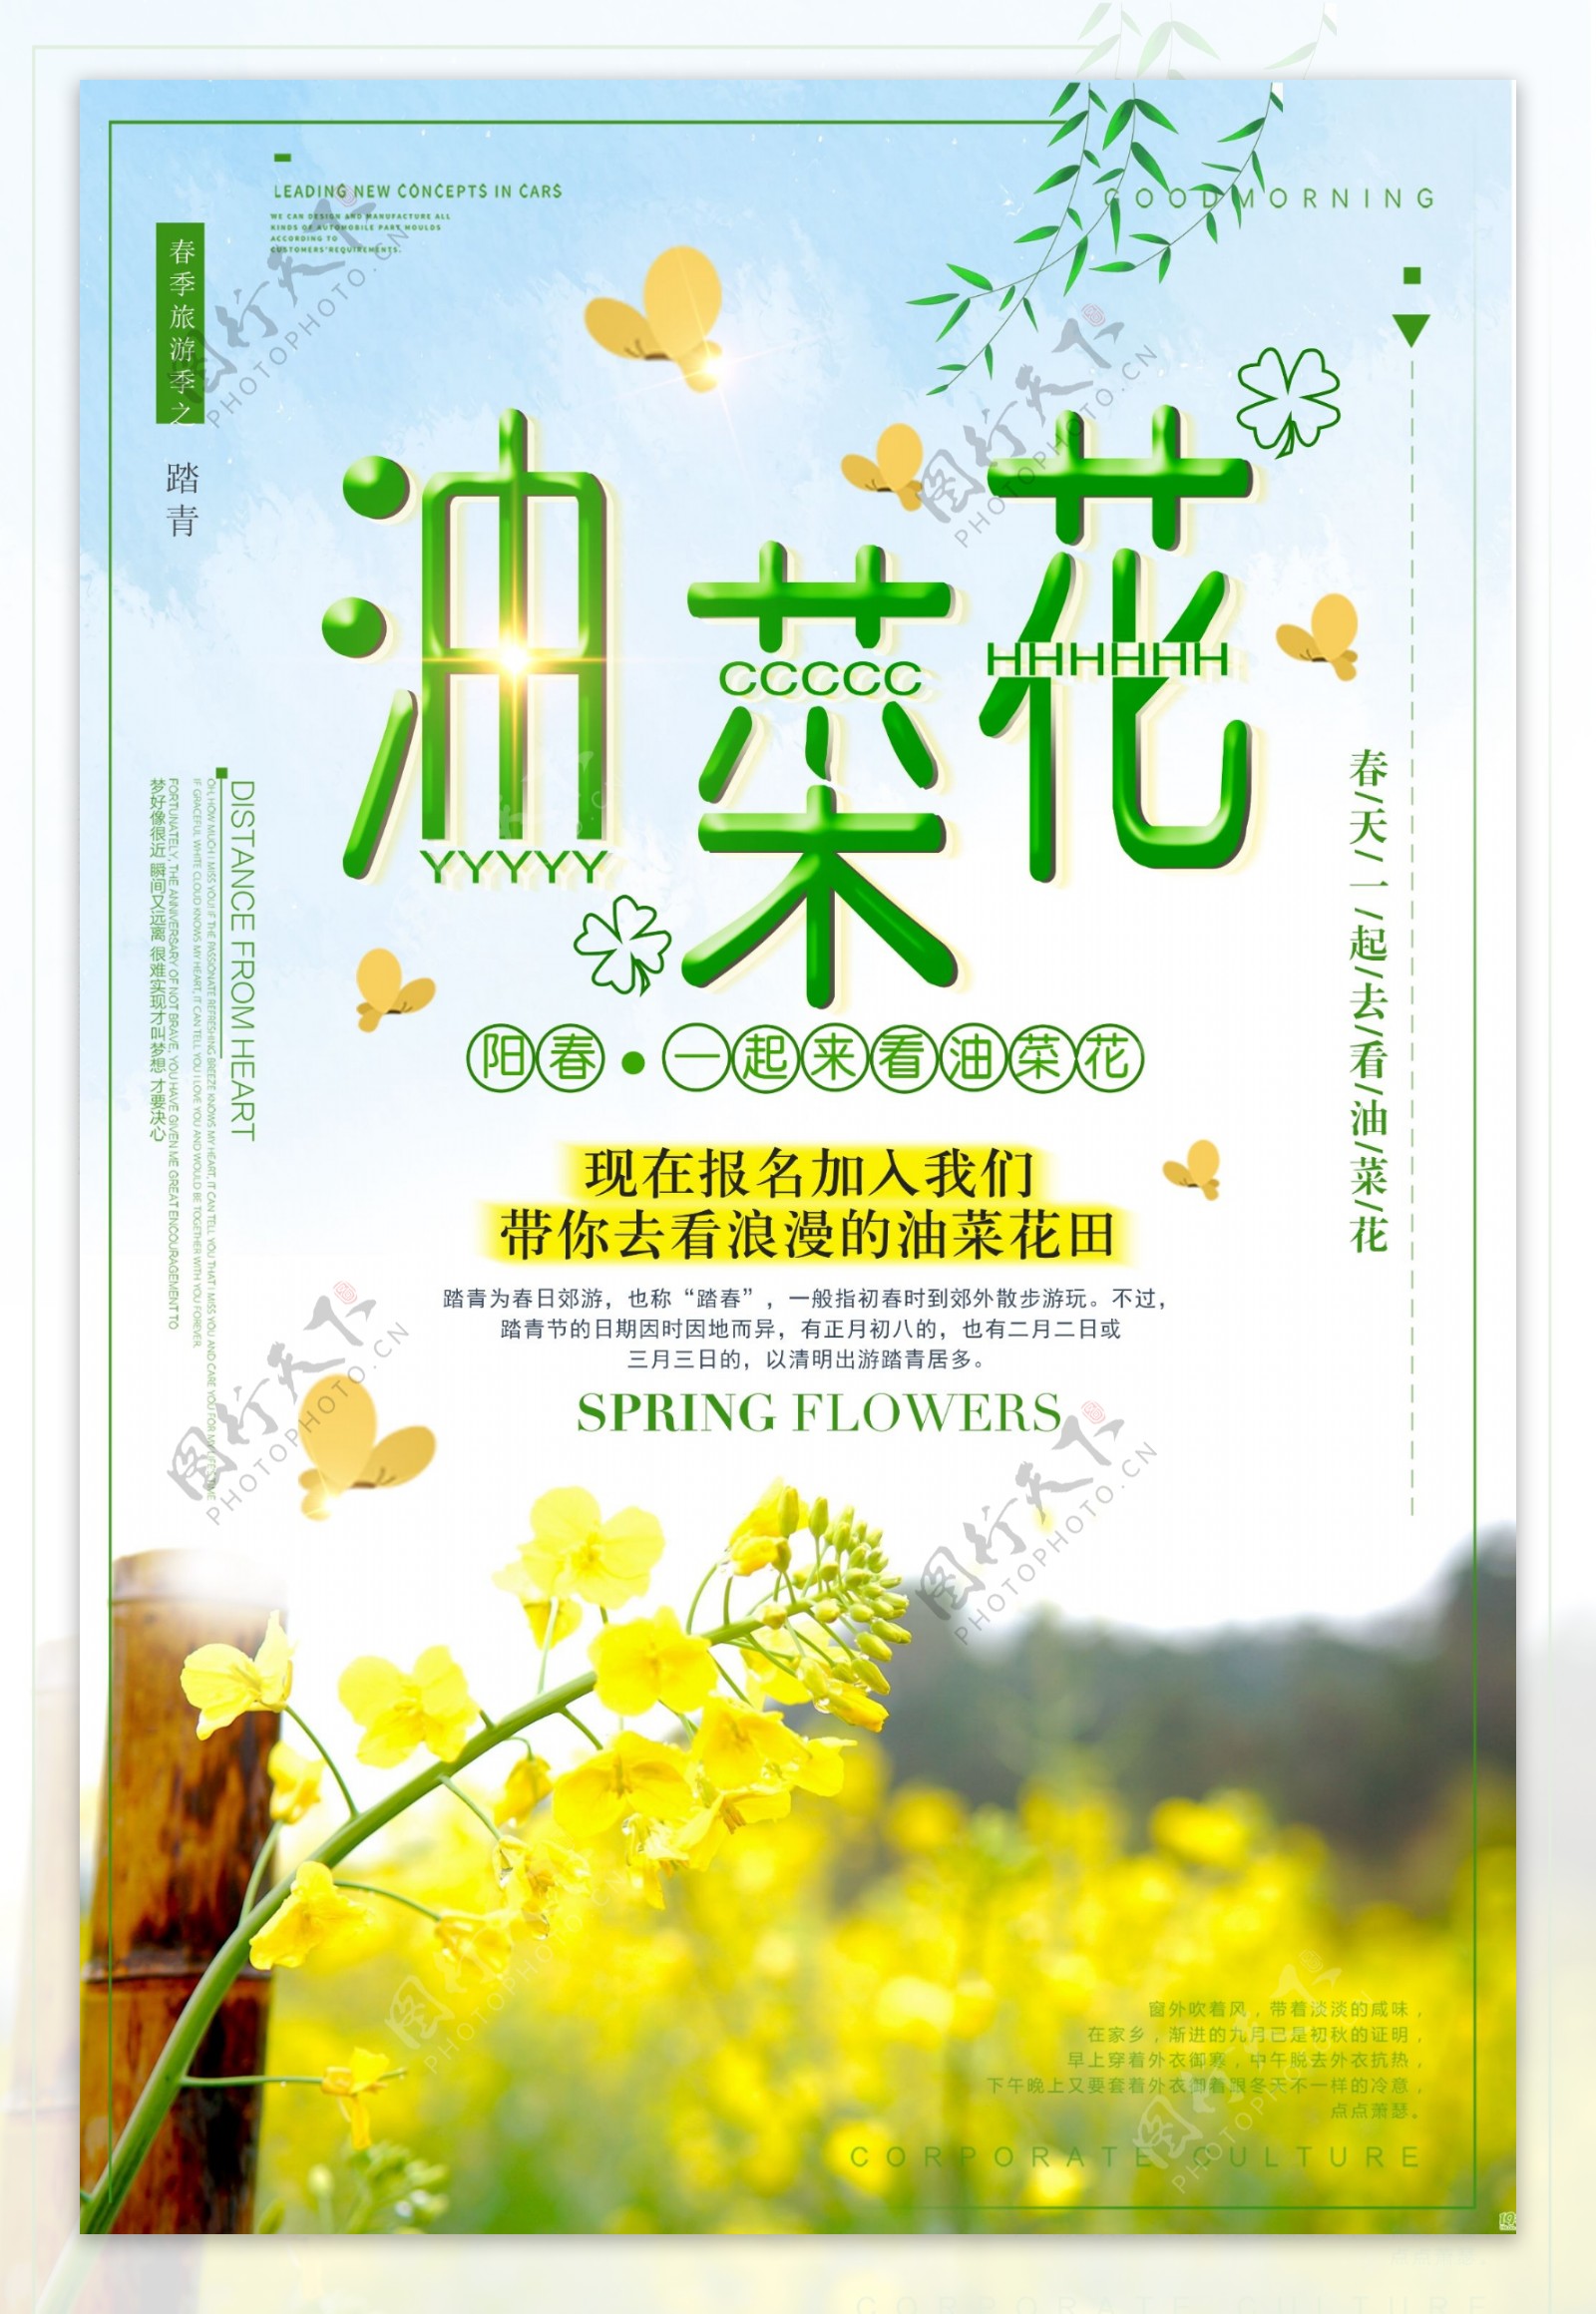 春季赏油菜花旅游季海报设计模板下载